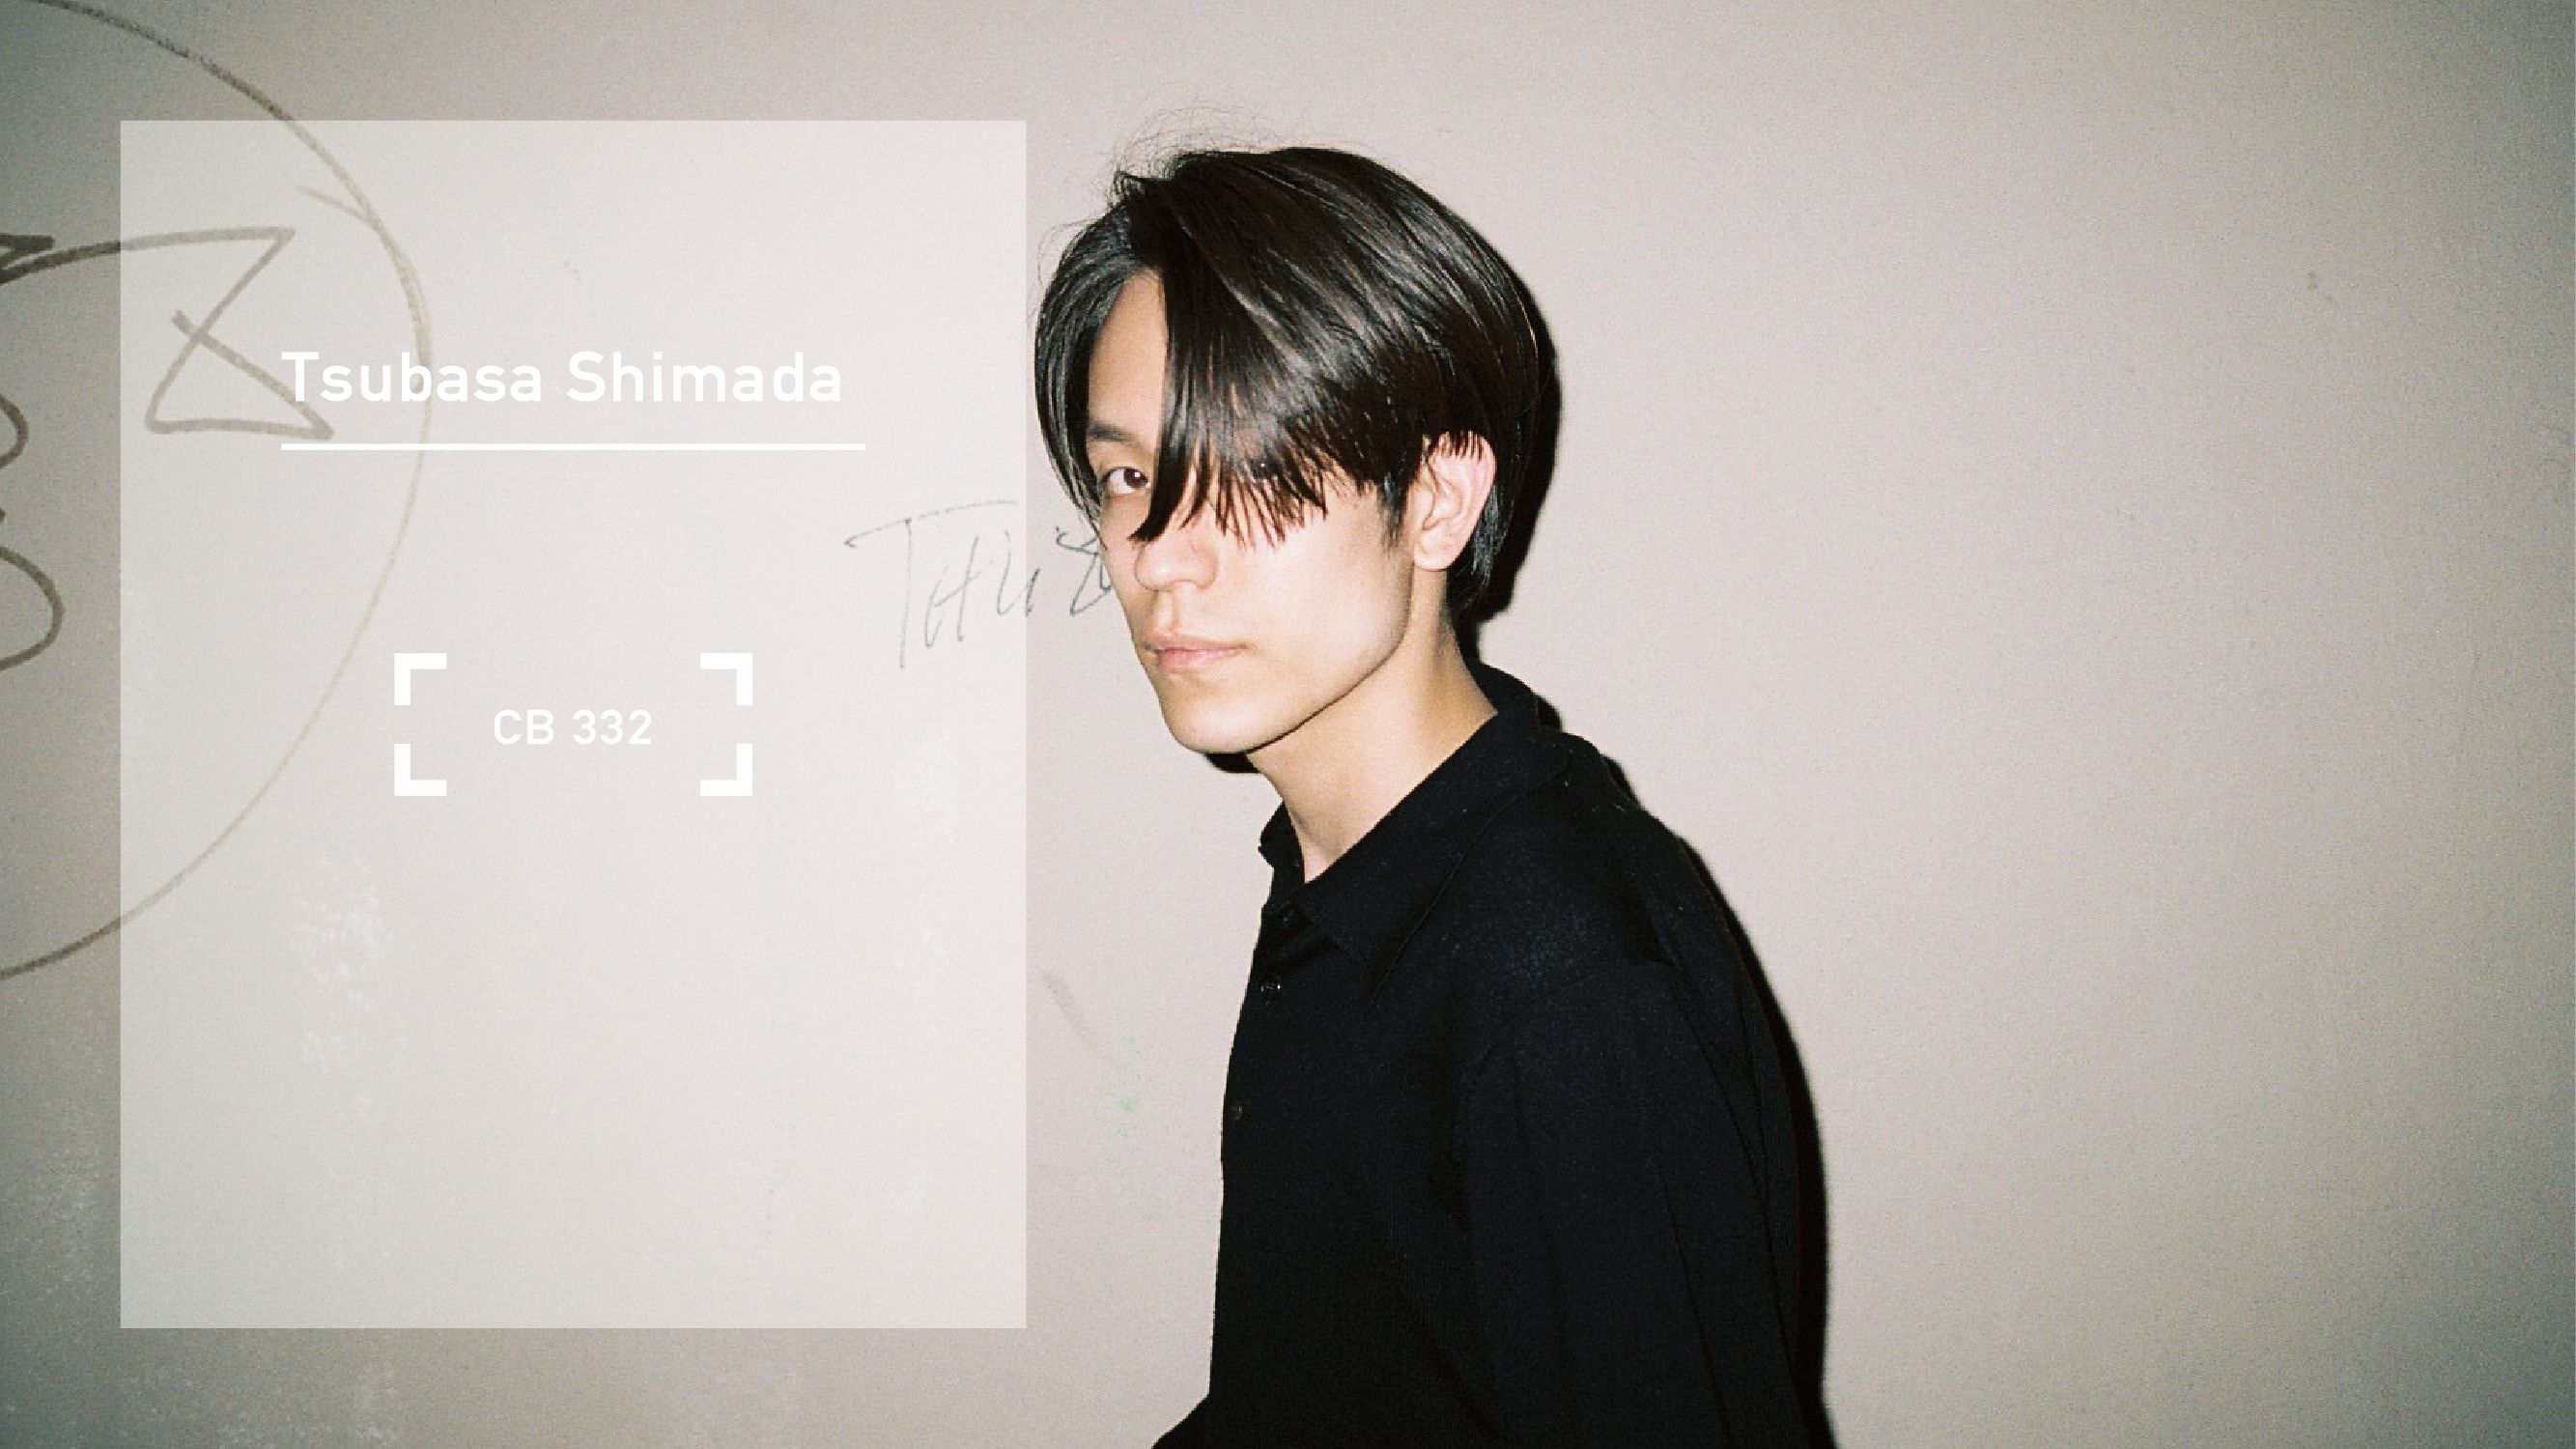 CB332 - Tsubasa Shimada